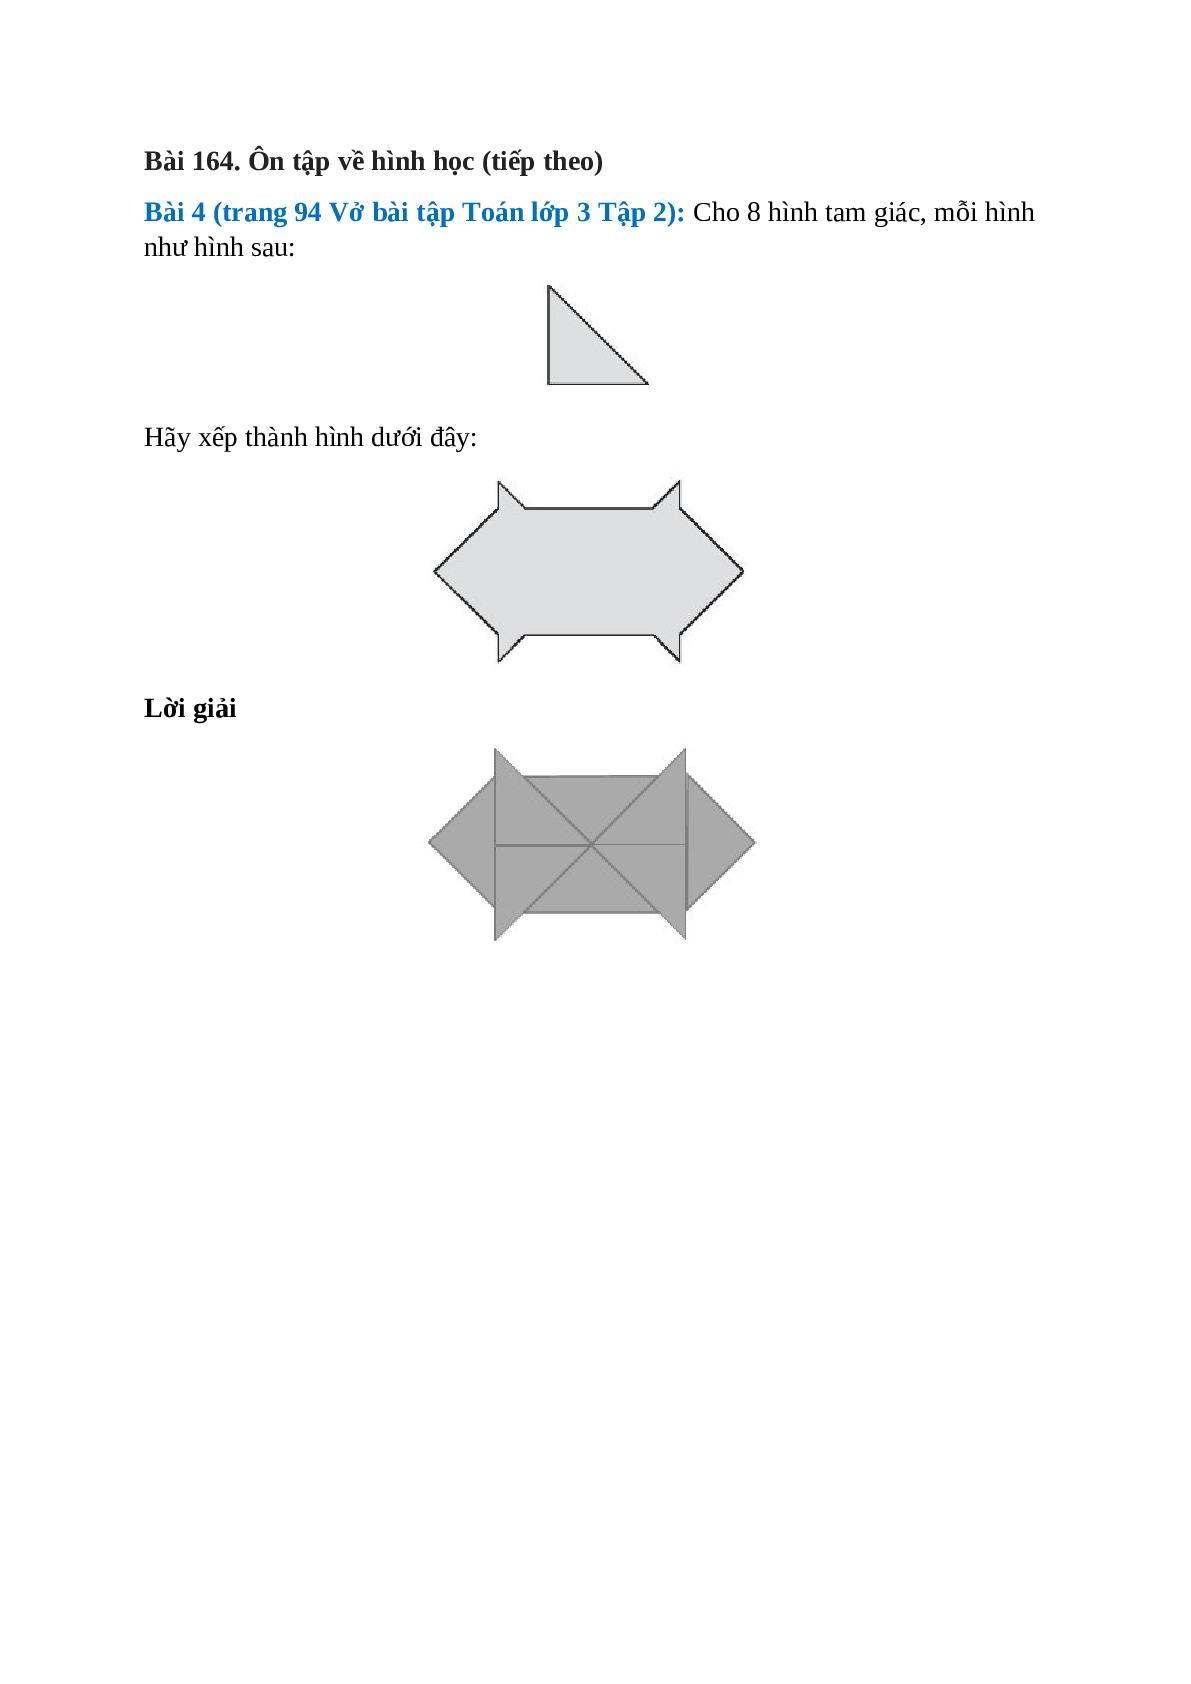 Cho 8 hình tam giác, mỗi hình như hình sau: Hãy xếp thành hình dưới đây (trang 1)